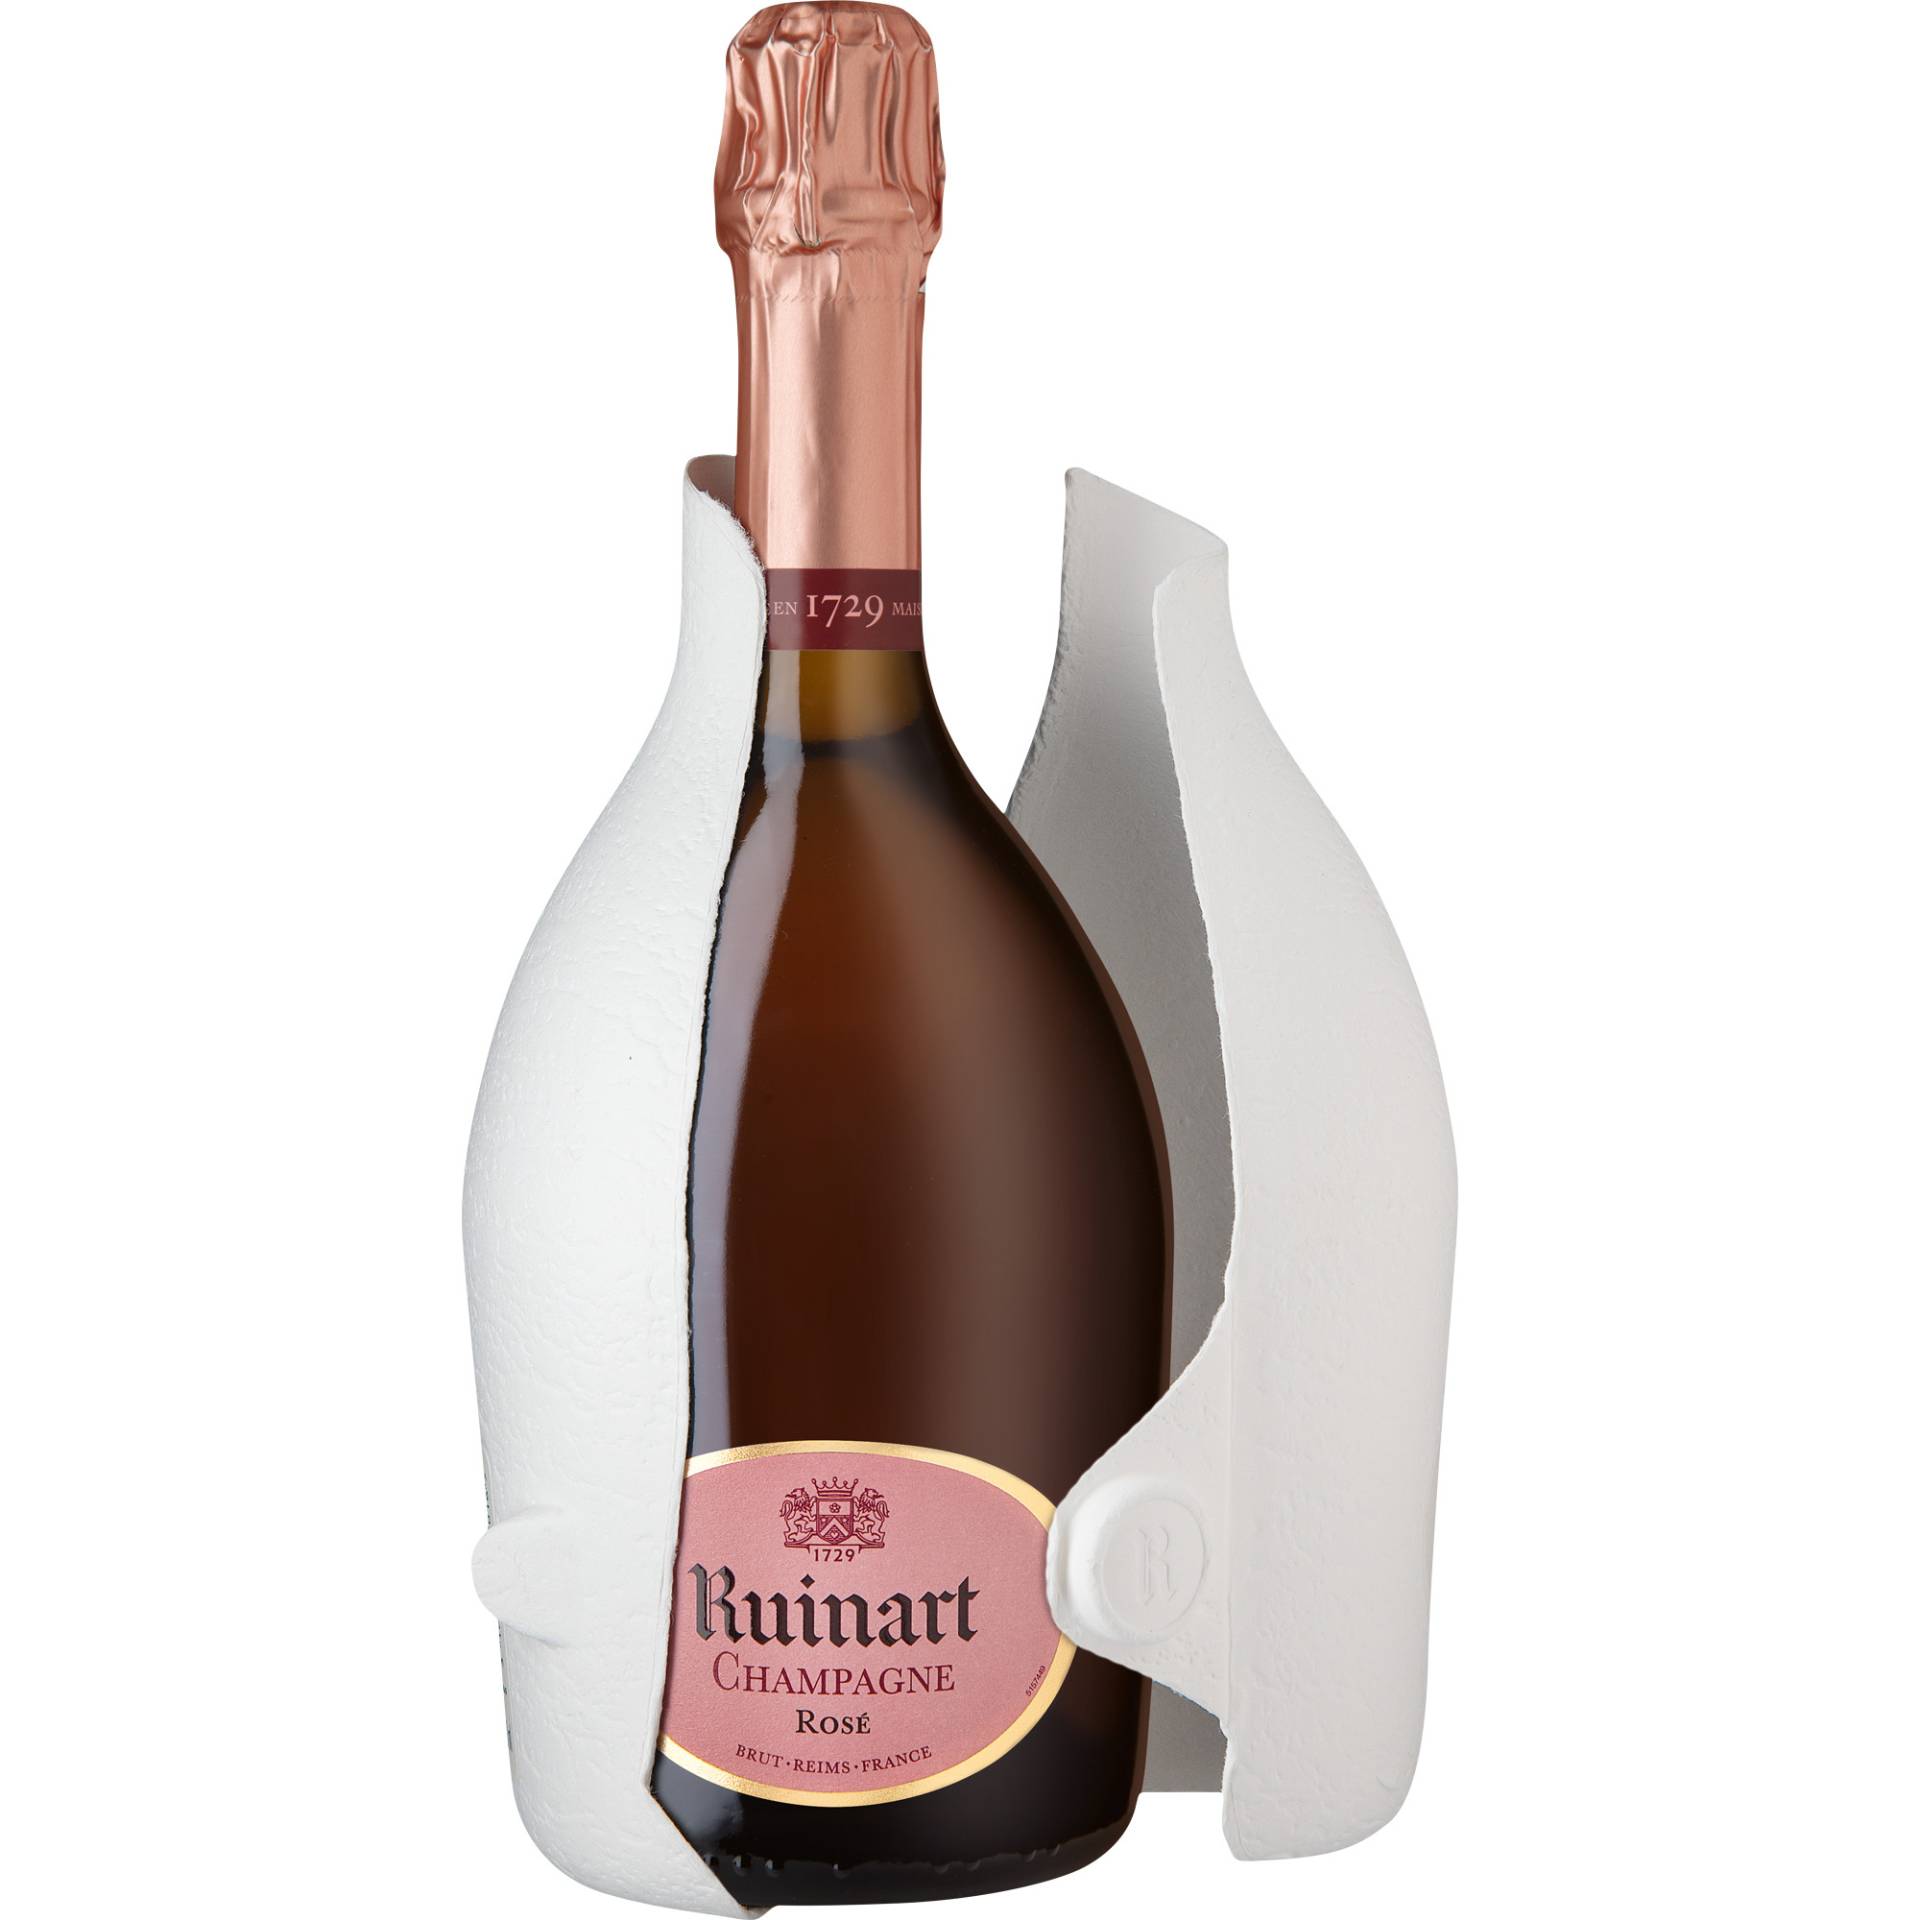 Champagne Ruinart Rosé, Brut, Champagne AC, Second Skin, Champagne, Schaumwein von Champagne Ruinart à Reims - France